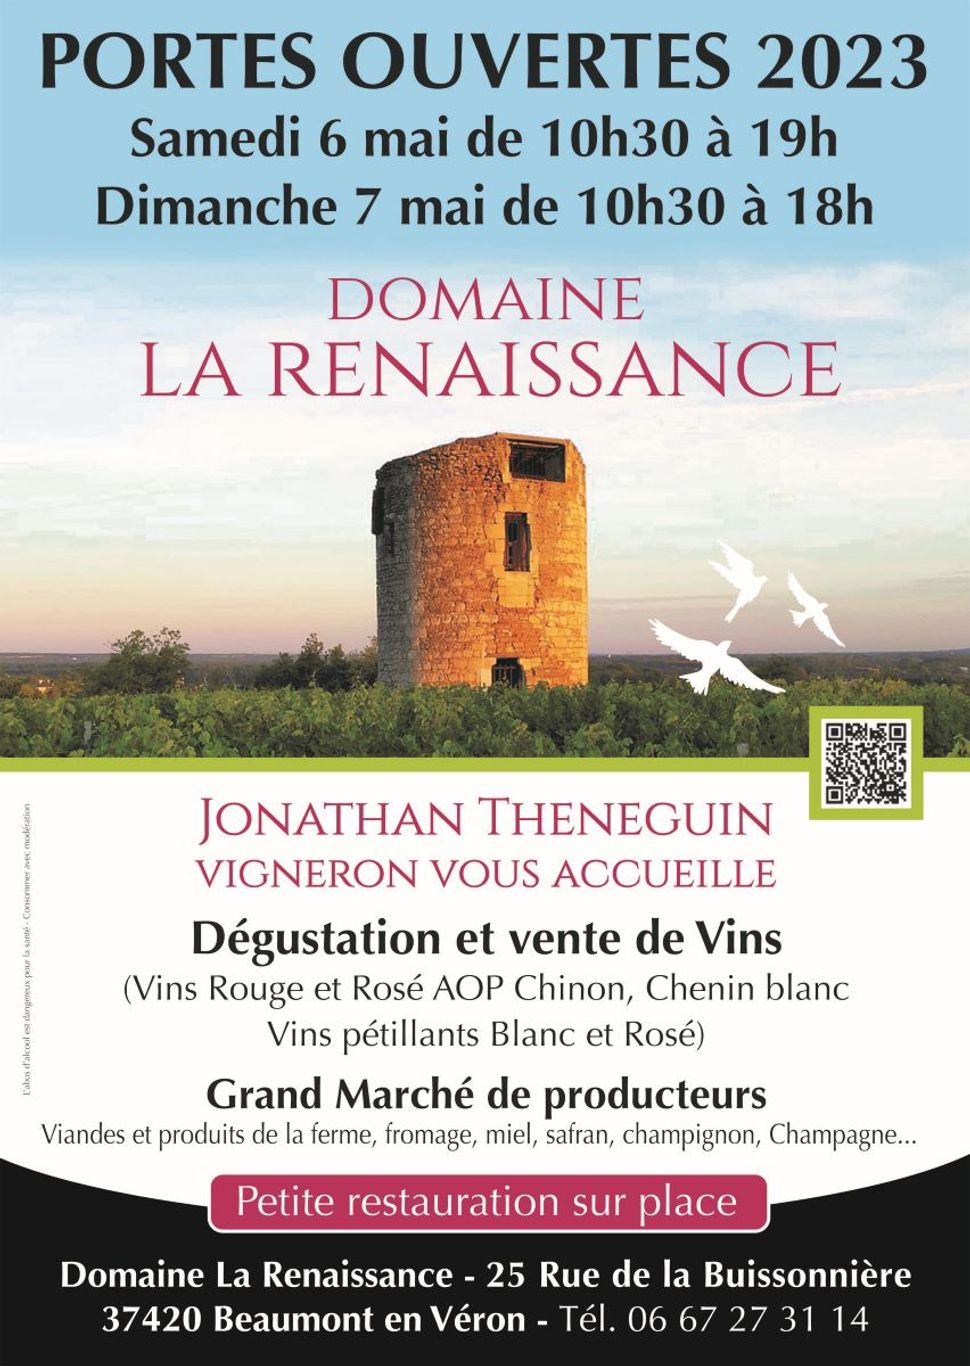 Portes ouvertes Domaine de la Rennaissance Beaumont en Veron